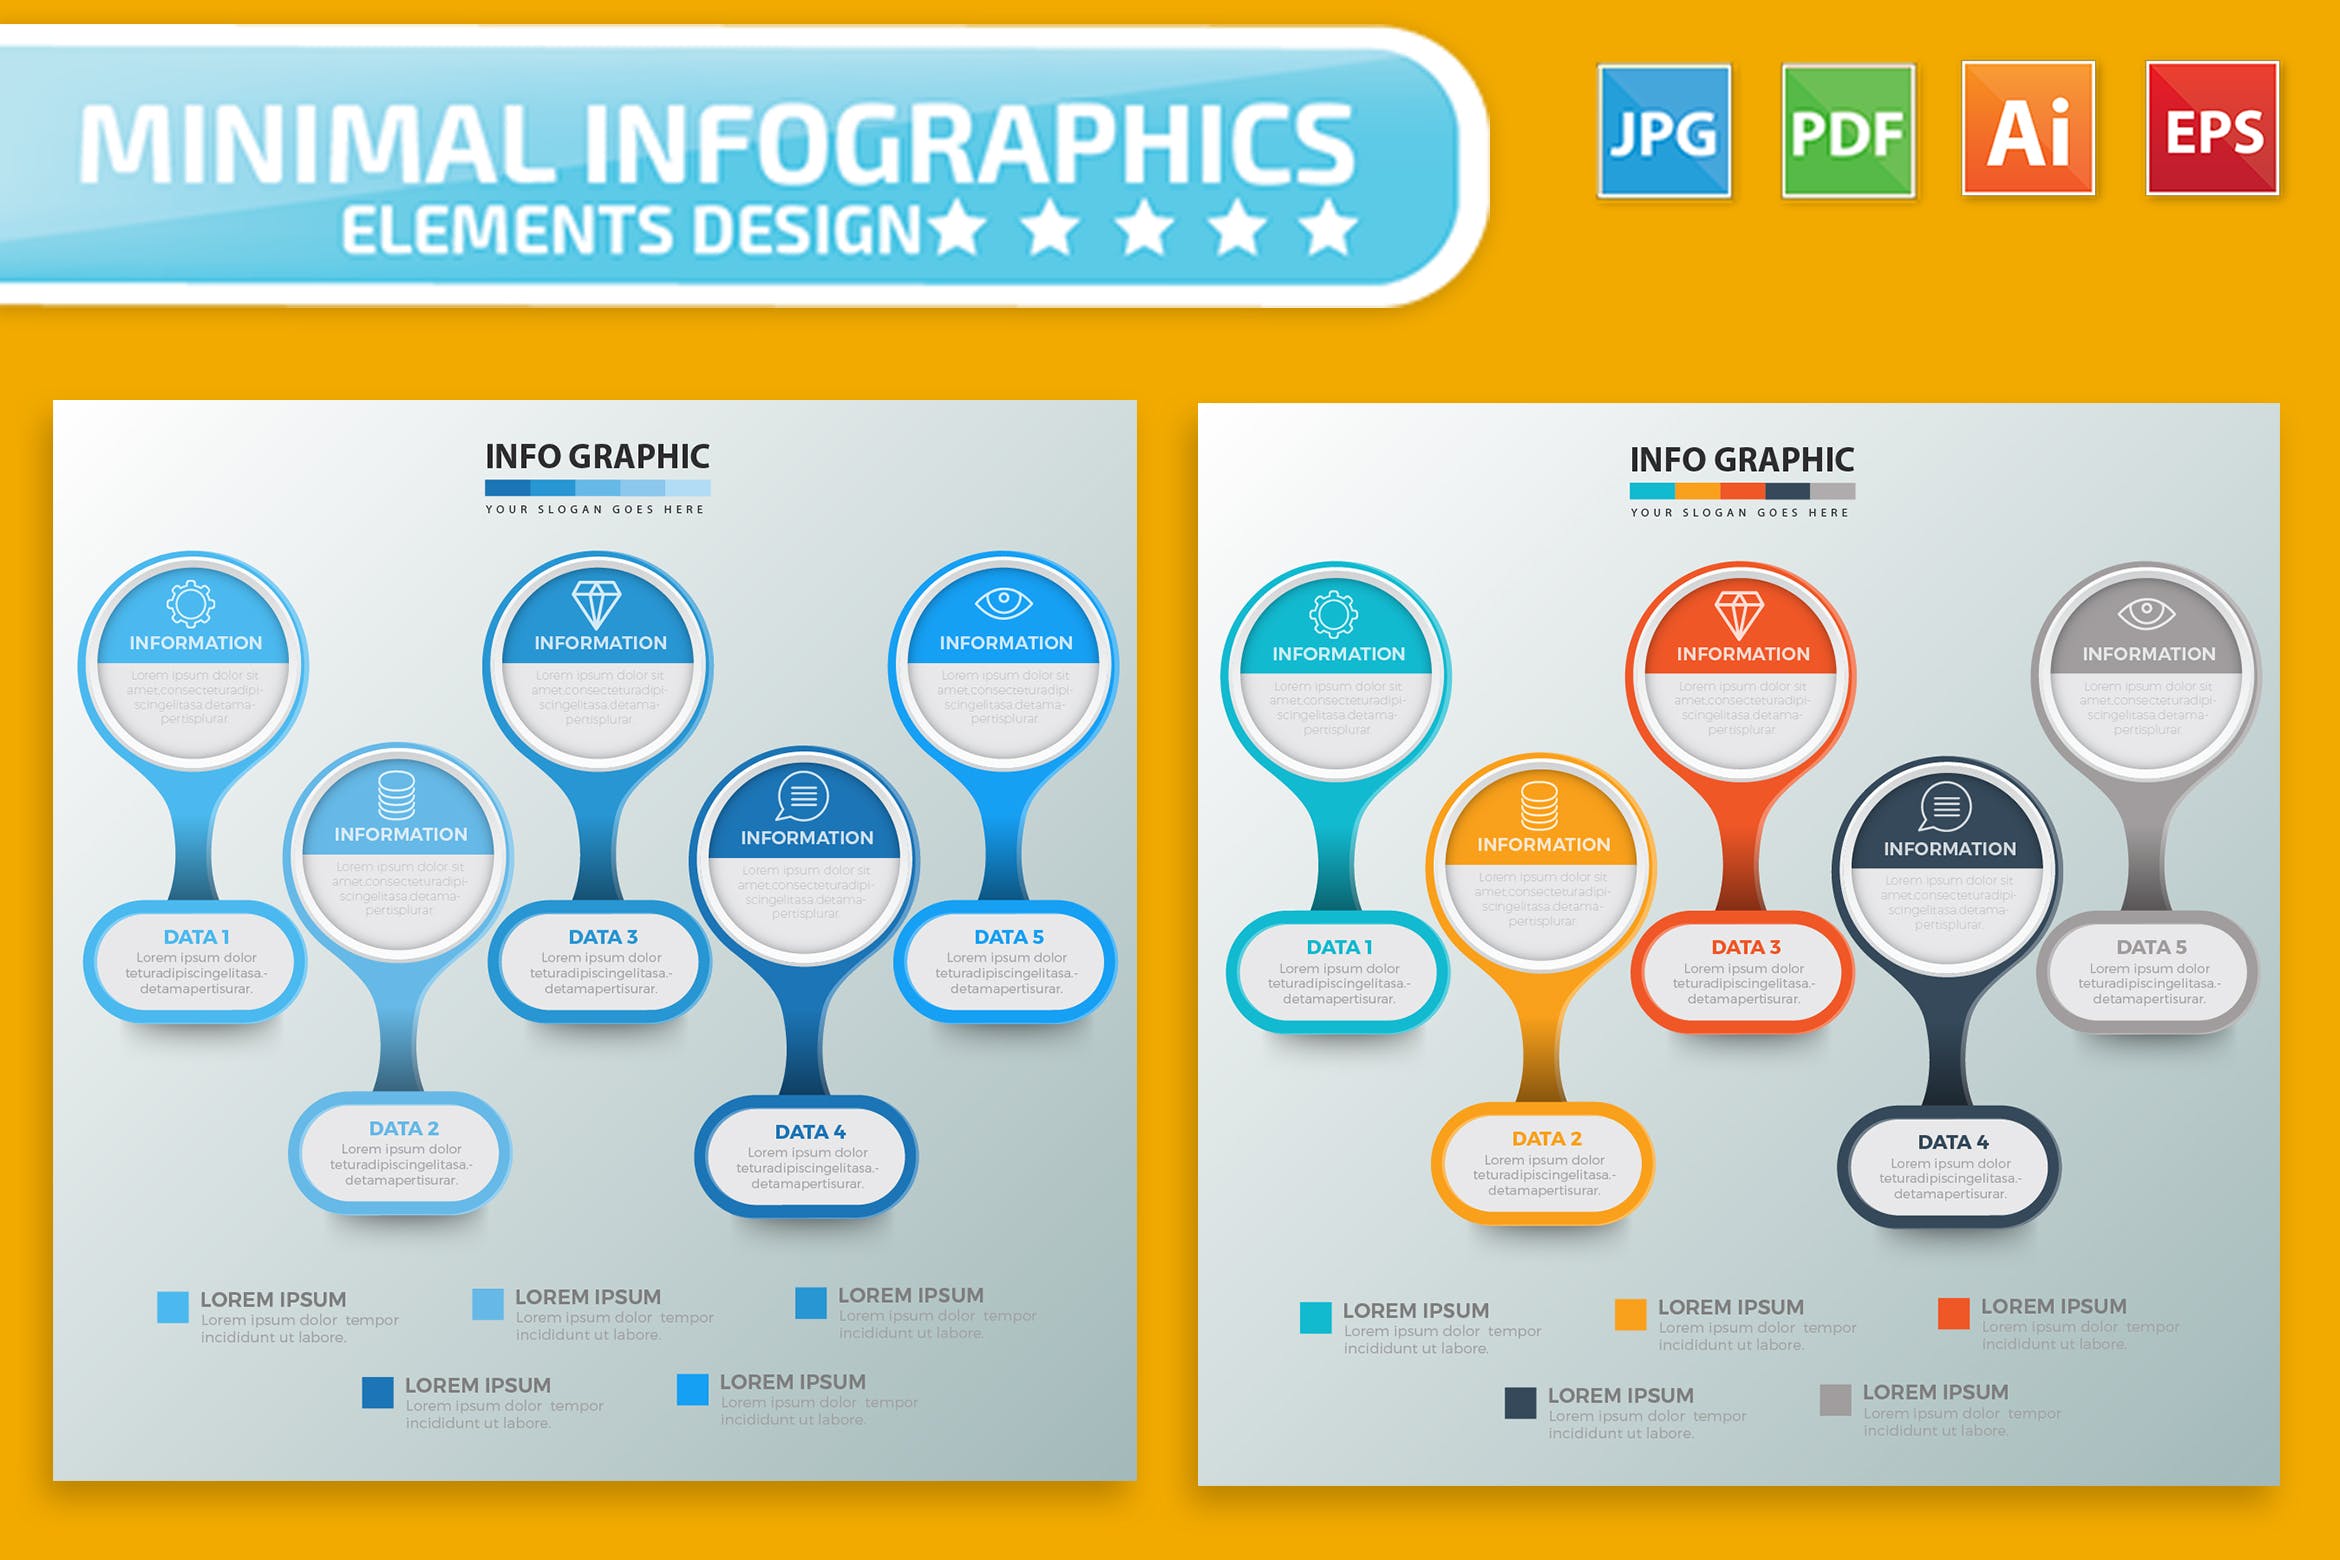 要点说明/重要特征信息图表矢量图形第一素材精选素材v2 Infographic Elements Design插图